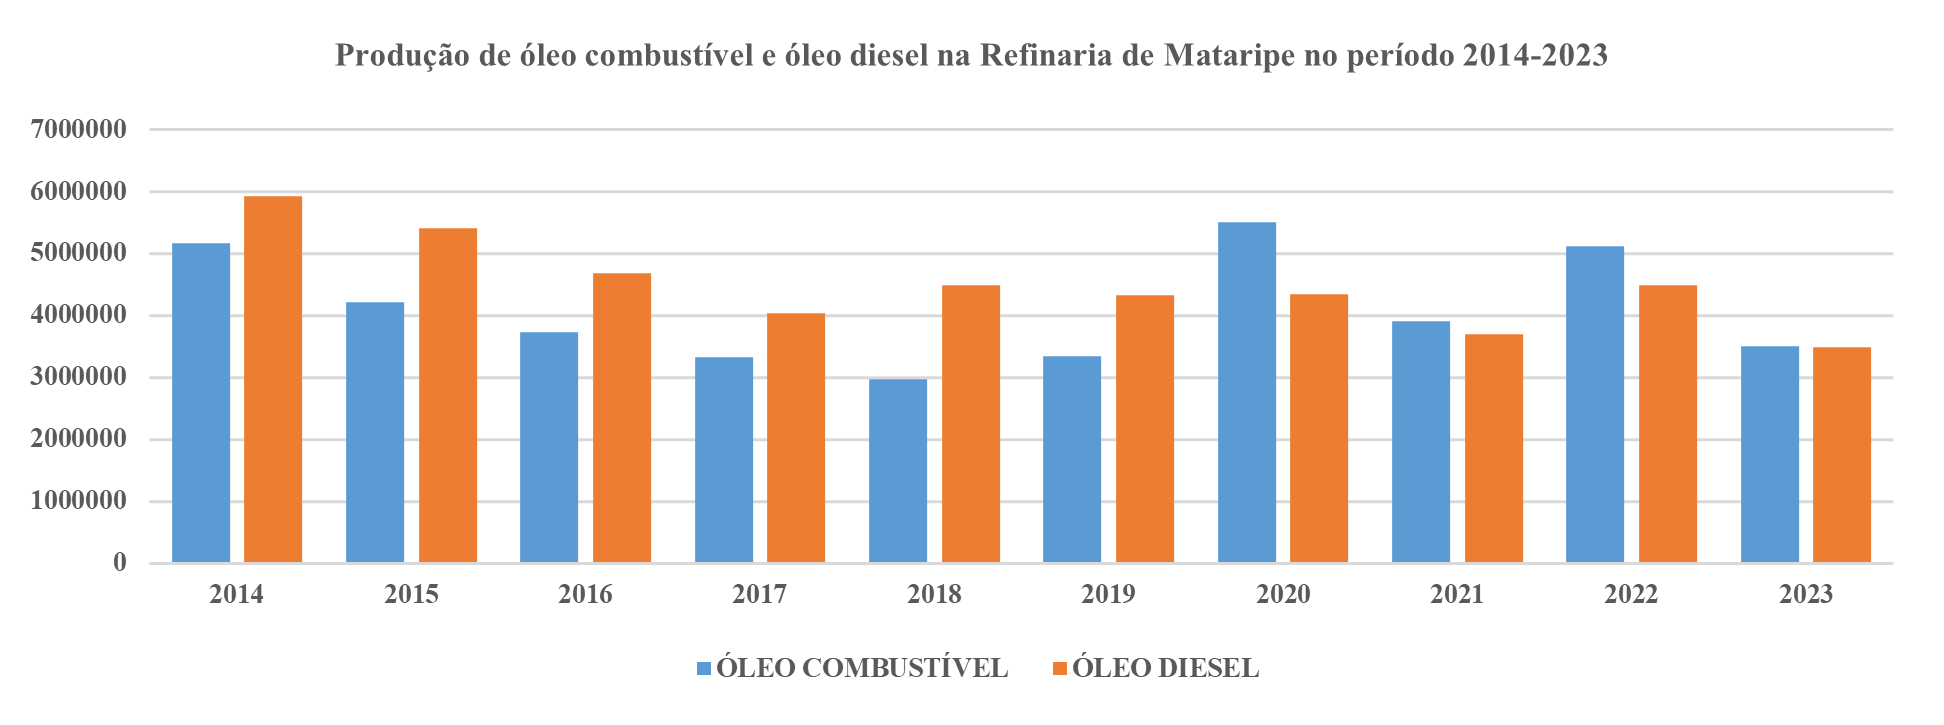 Gráfico da produção de óleo combustível e óleo diesel na REFMAT entre 2014 e 2023.